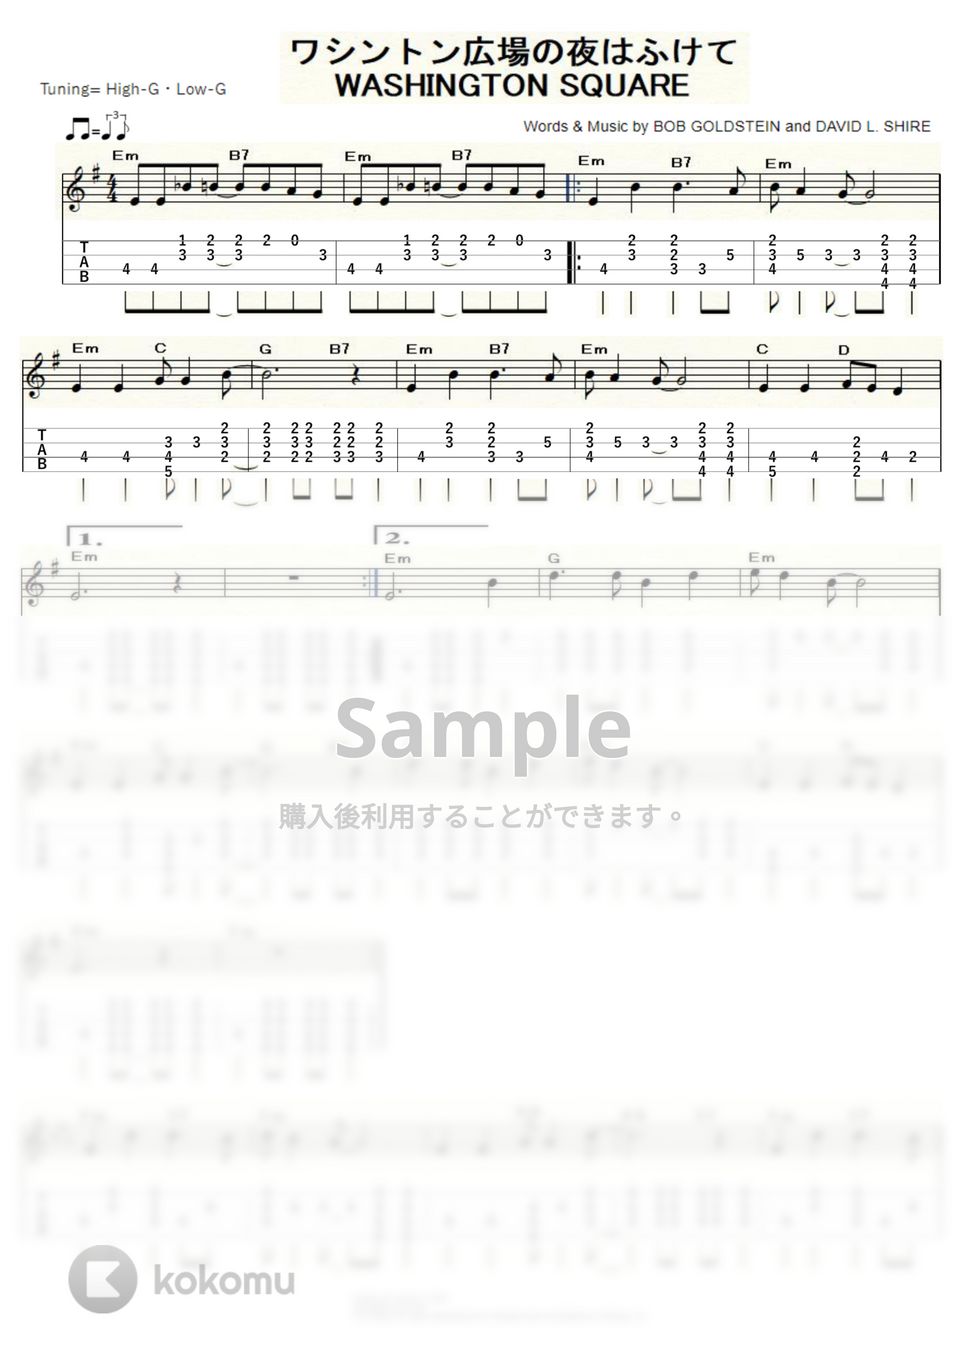 ヴィレッジ・ストンパーズ - ワシントン広場の夜はふけて (ｳｸﾚﾚｿﾛ / High-G・Low-G / 中級) by ukulelepapa